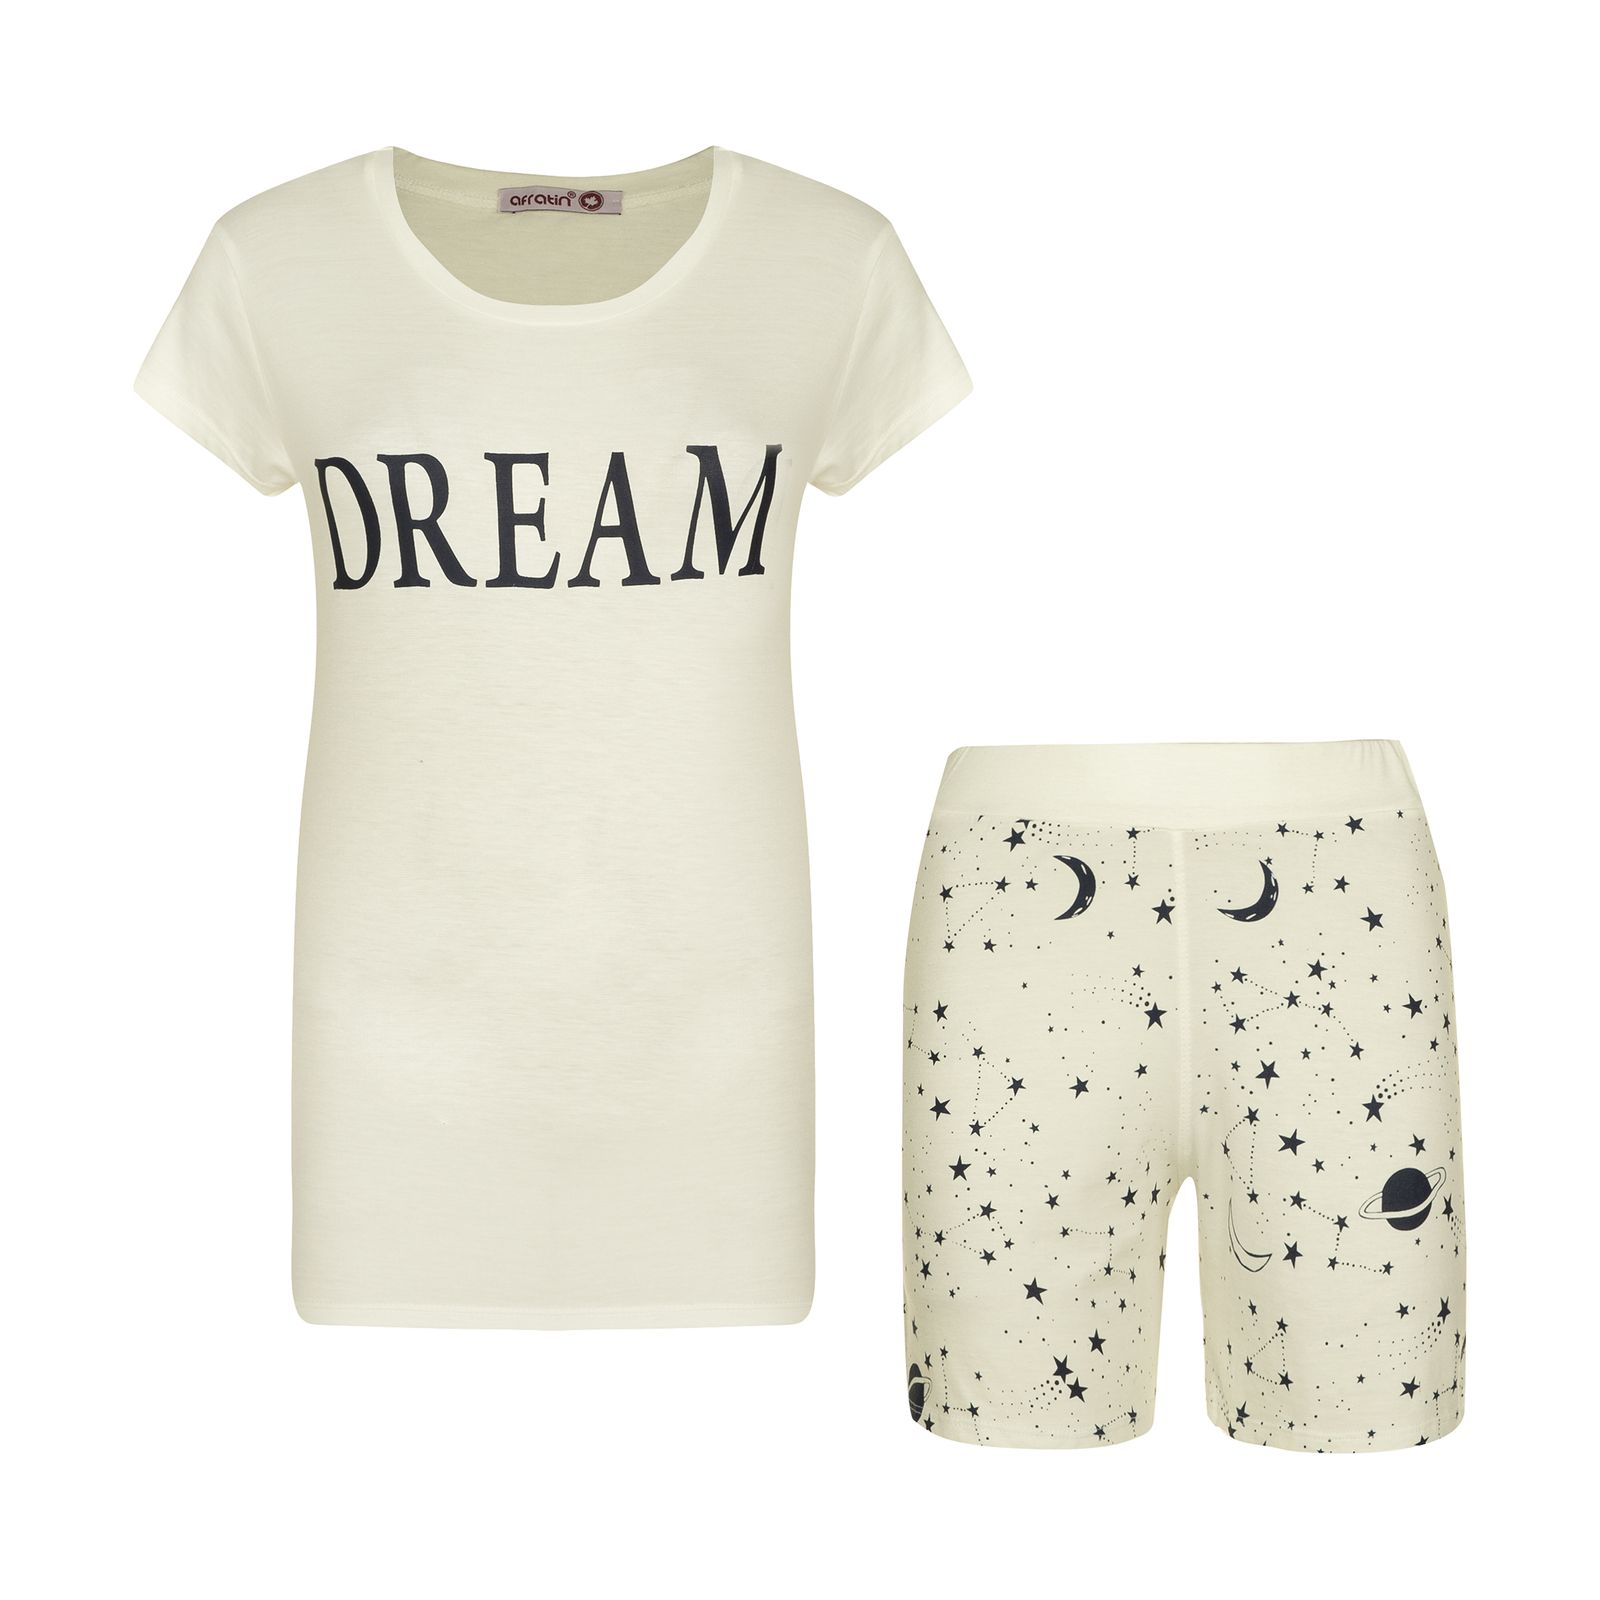 ست تی شرت و شلوارک زنانه افراتین مدل Dream کد 6558 رنگ شیری -  - 1